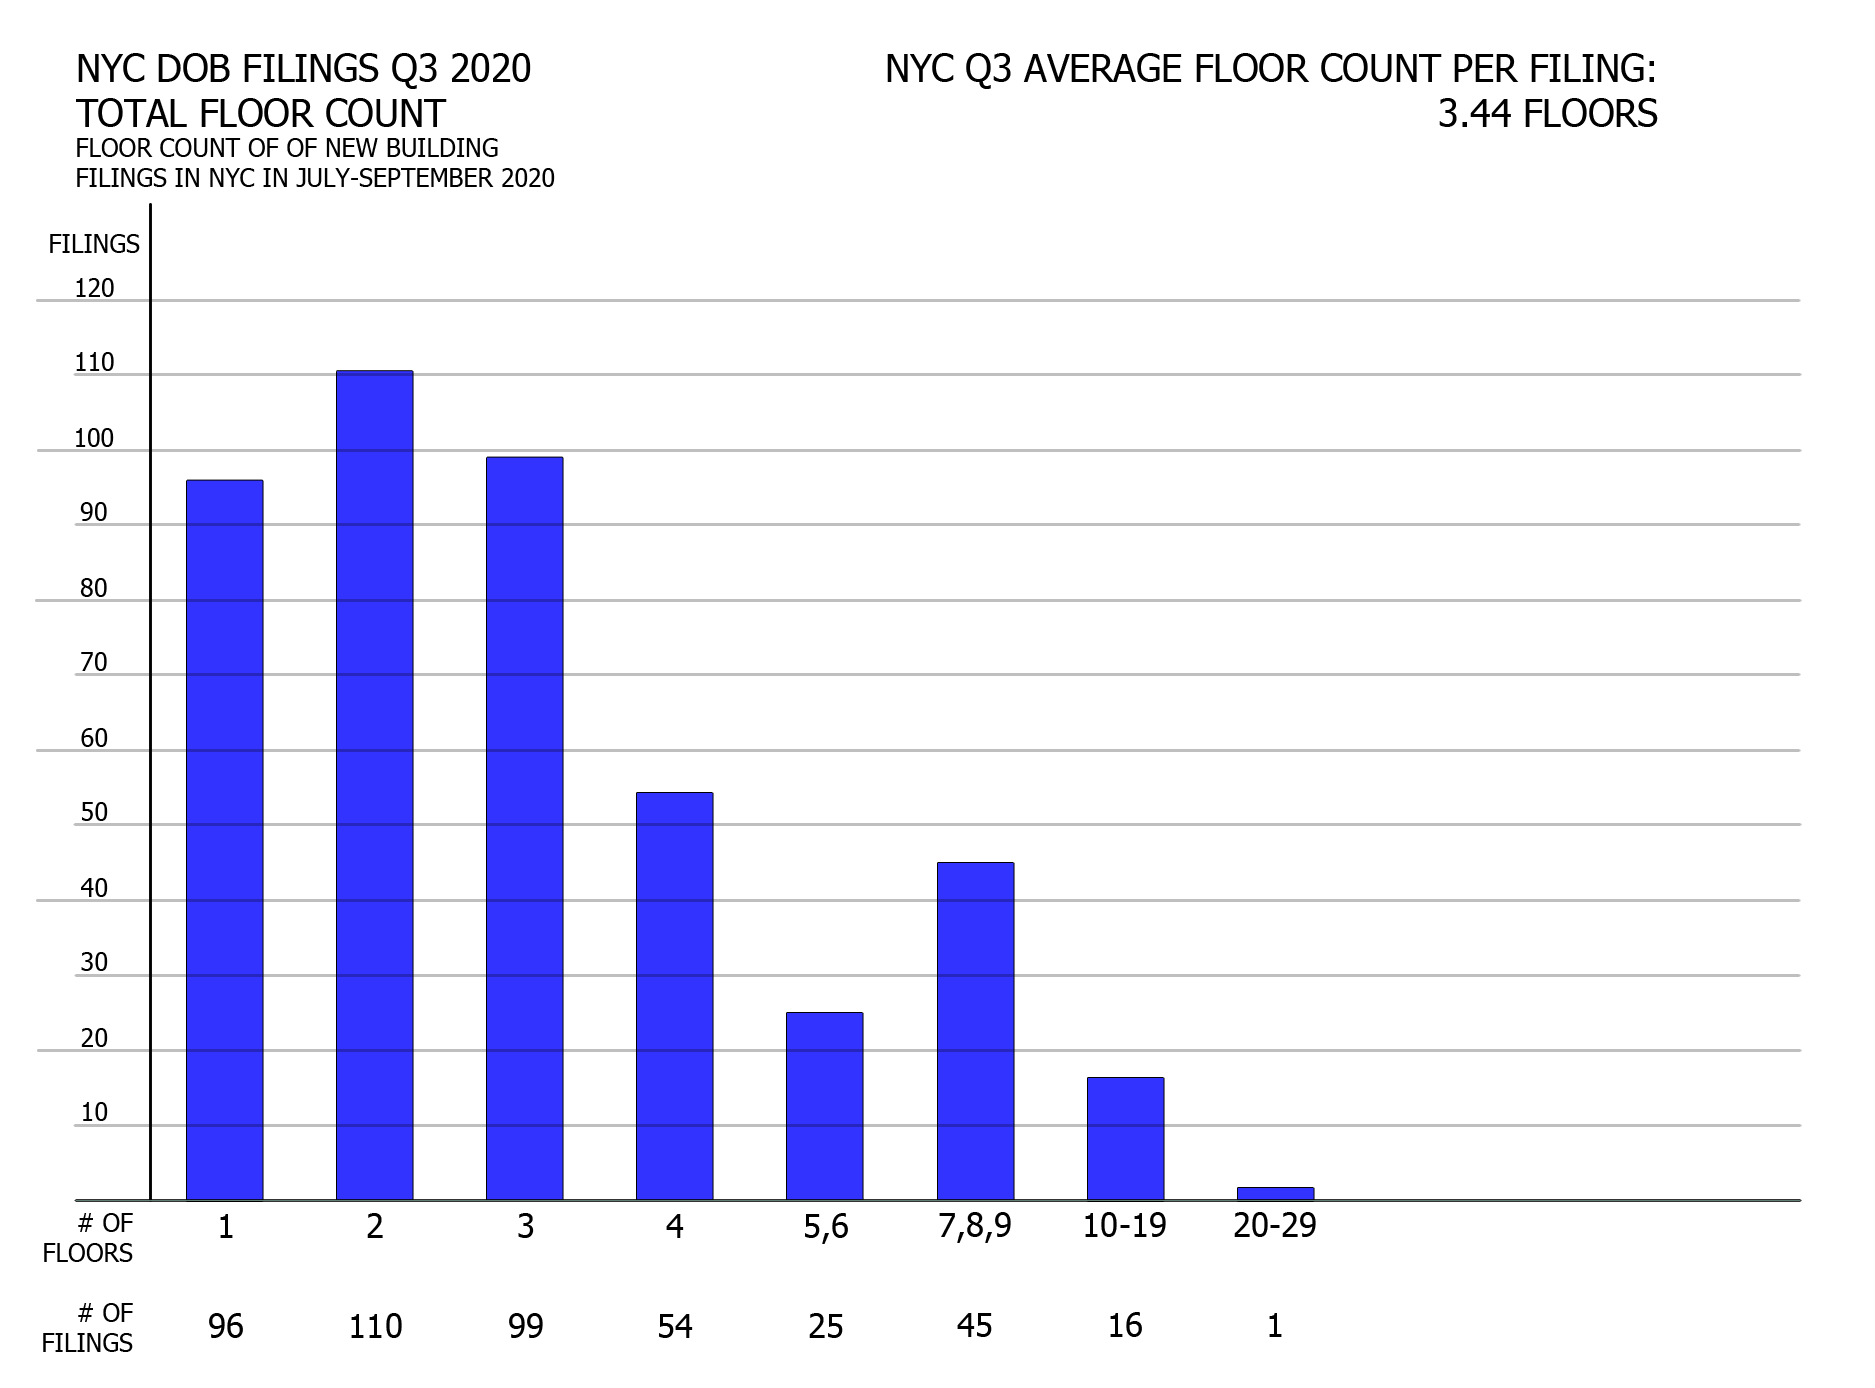 NYC DOB filings in Q3 2020 by floor count. Credit: Vitali Ogorodnikov